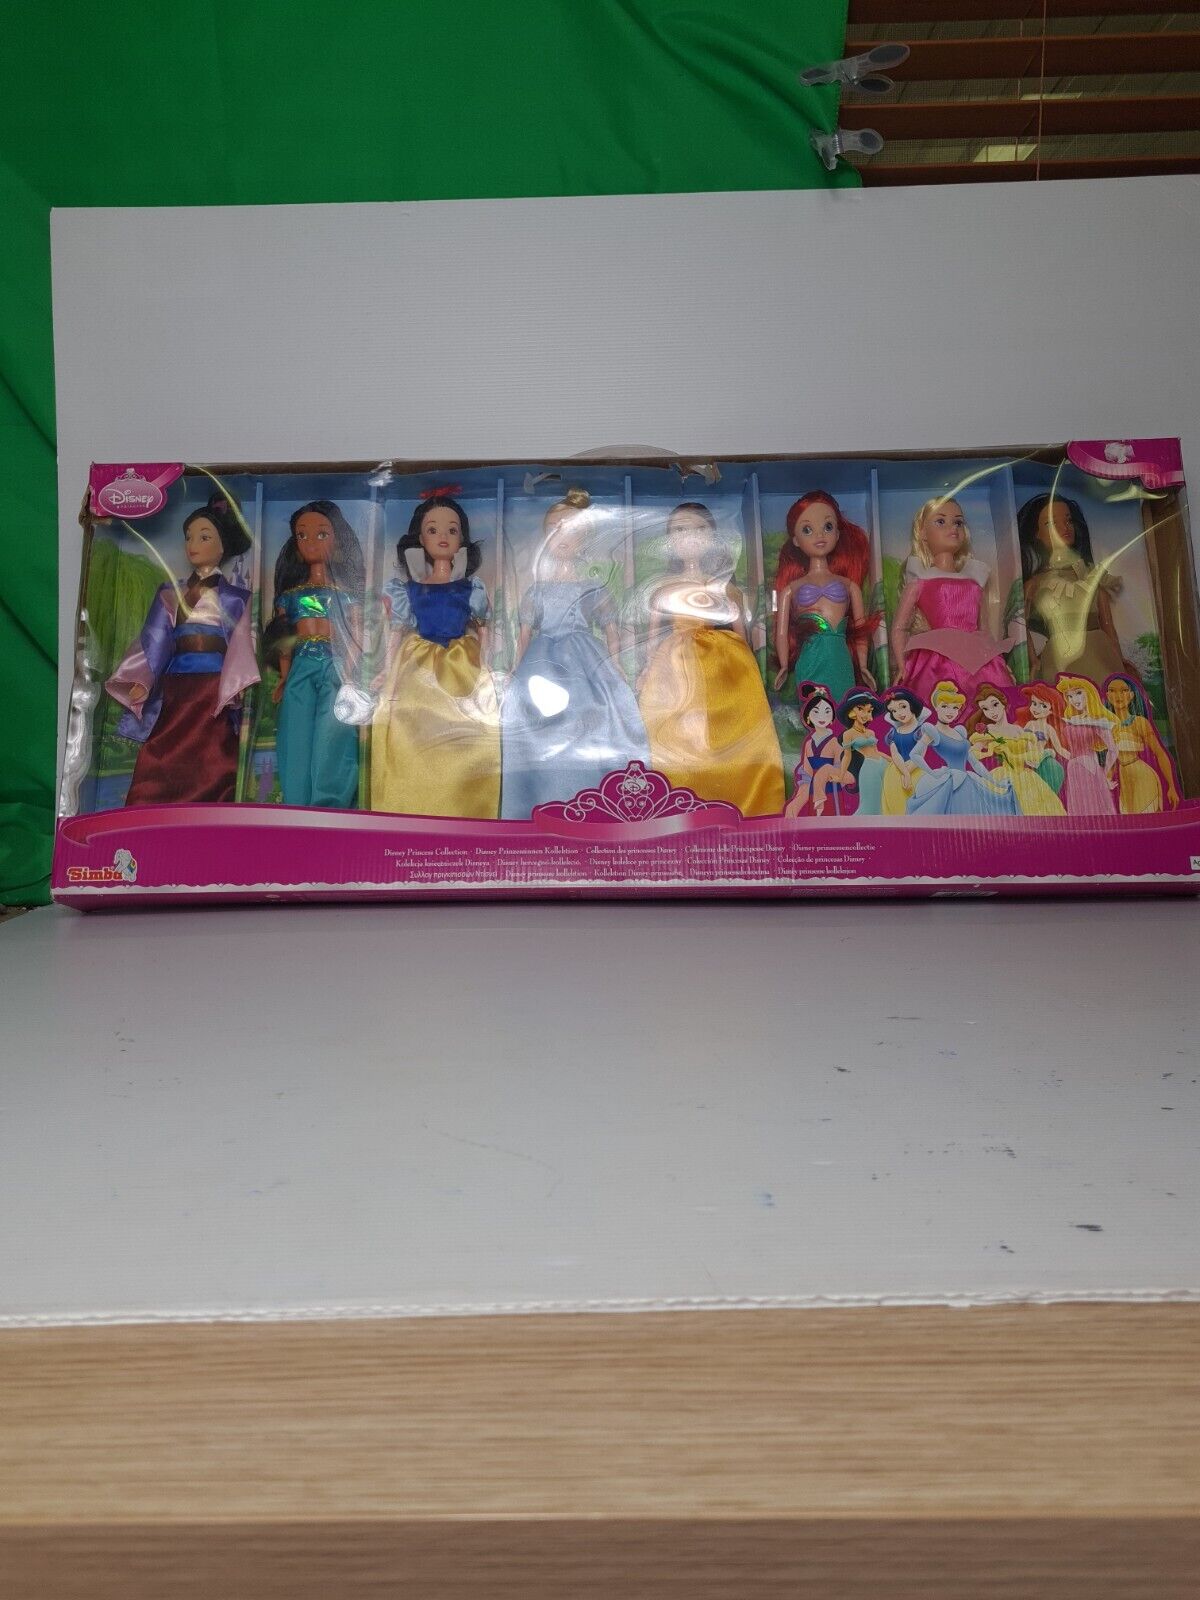 Samba Disney 8 Piece Princess Doll Collection Very Rare Collectables As New NIB